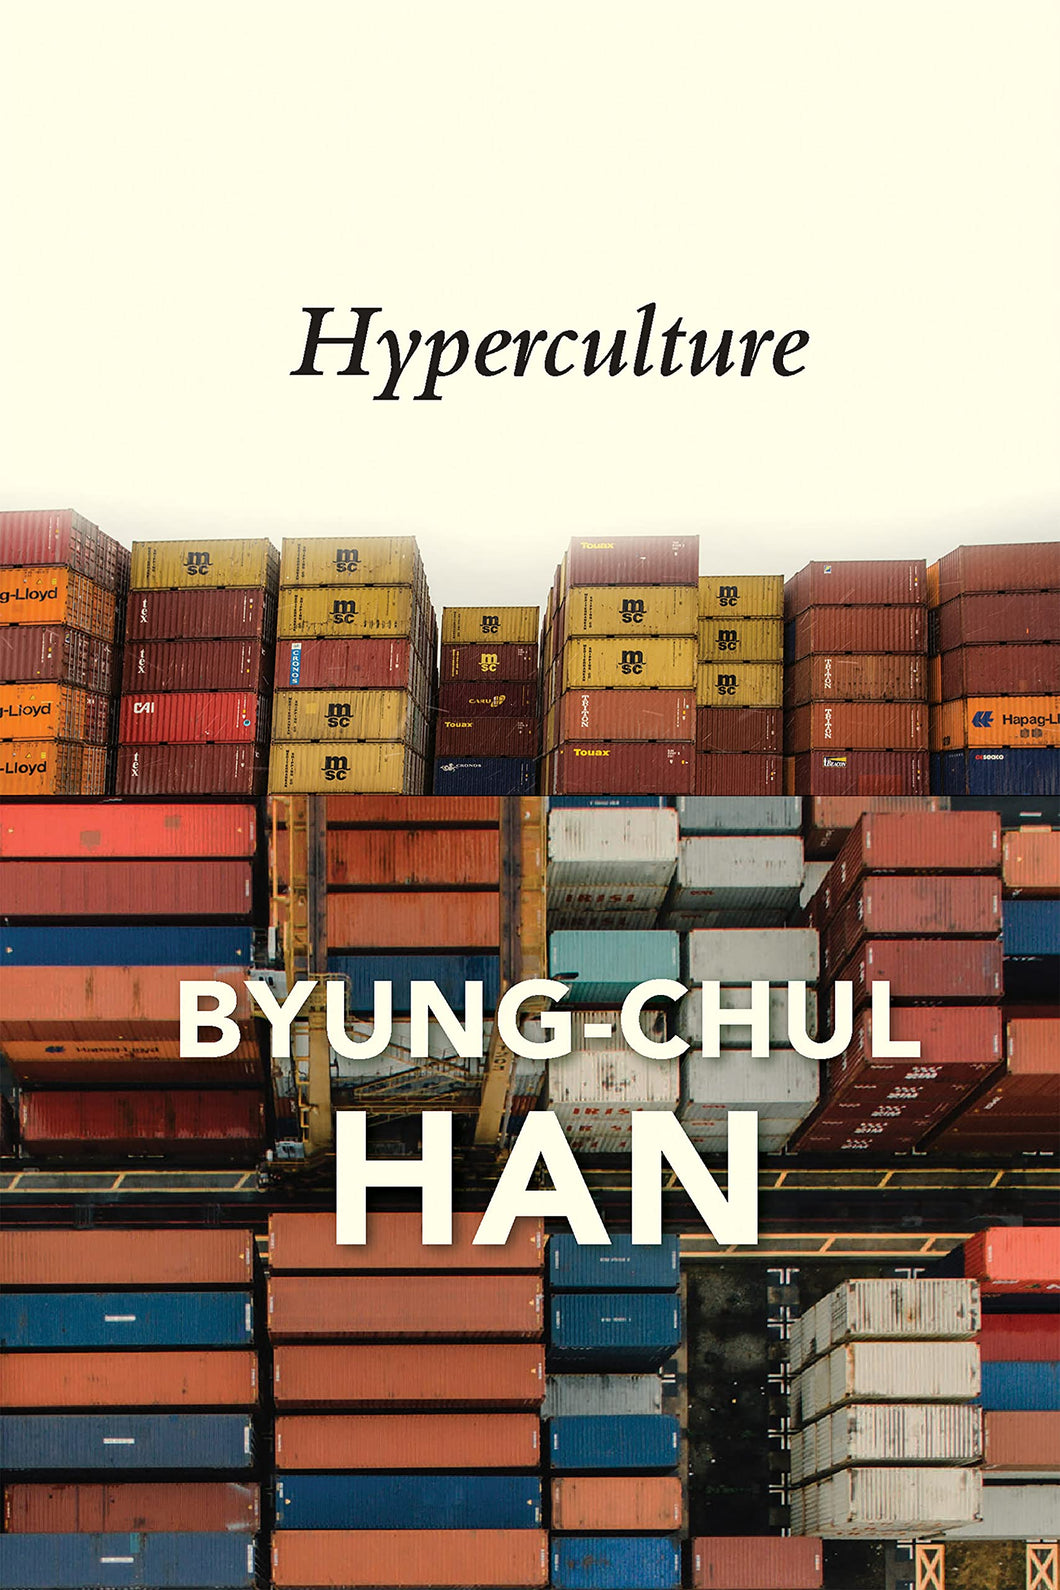 Hyperculture : Culture and Globalisation ร้านหนังสือและสิ่งของ เป็นร้านหนังสือภาษาอังกฤษหายาก และร้านกาแฟ หรือ บุ๊คคาเฟ่ ตั้งอยู่สุขุมวิท กรุงเทพ